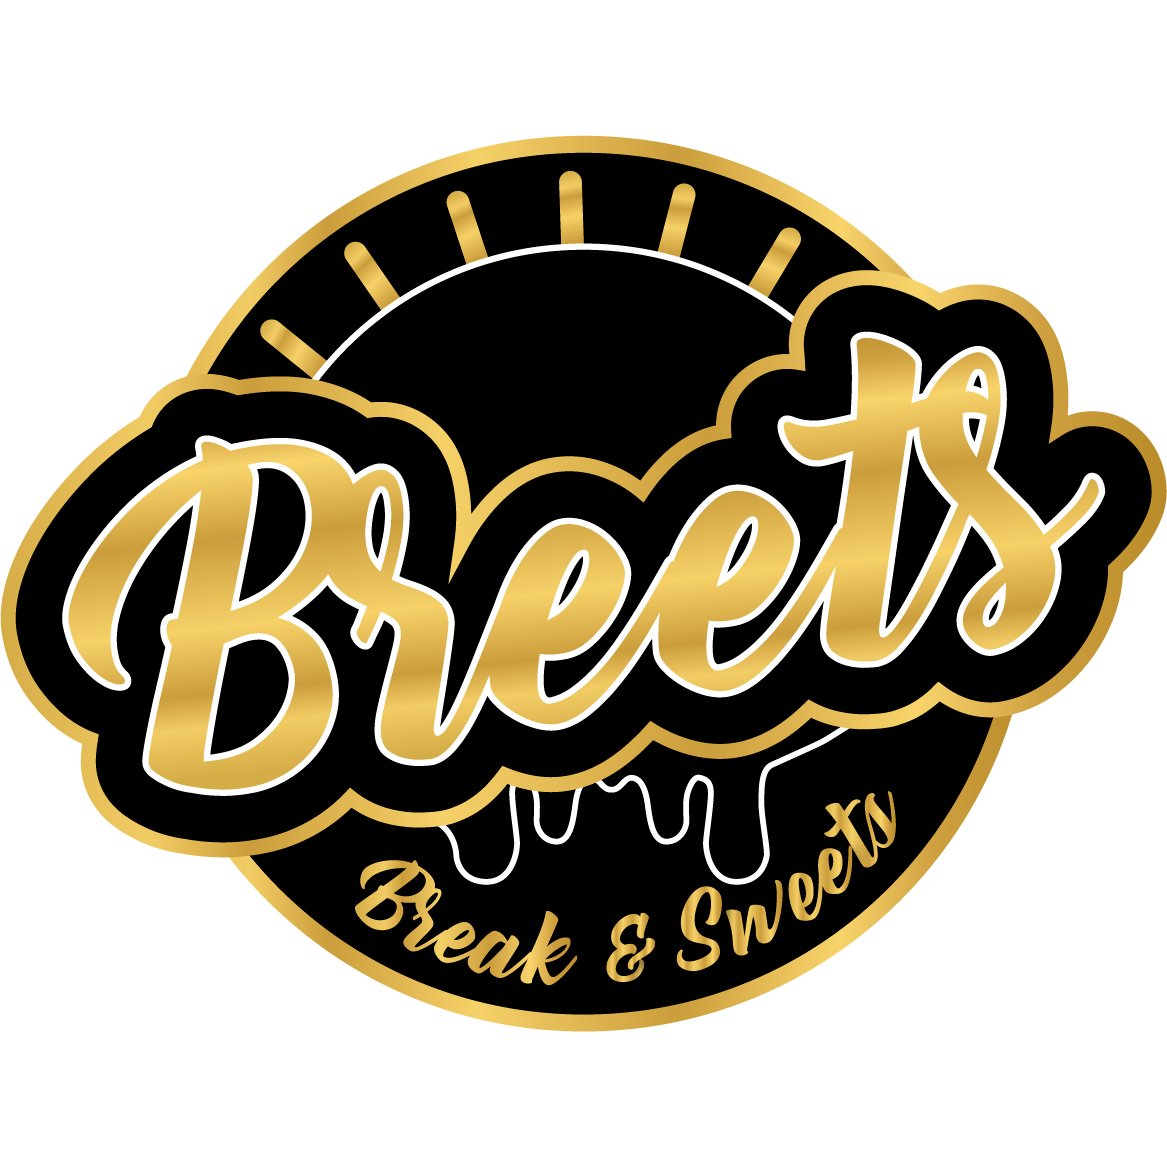 Logo von Breets - Break & Sweets